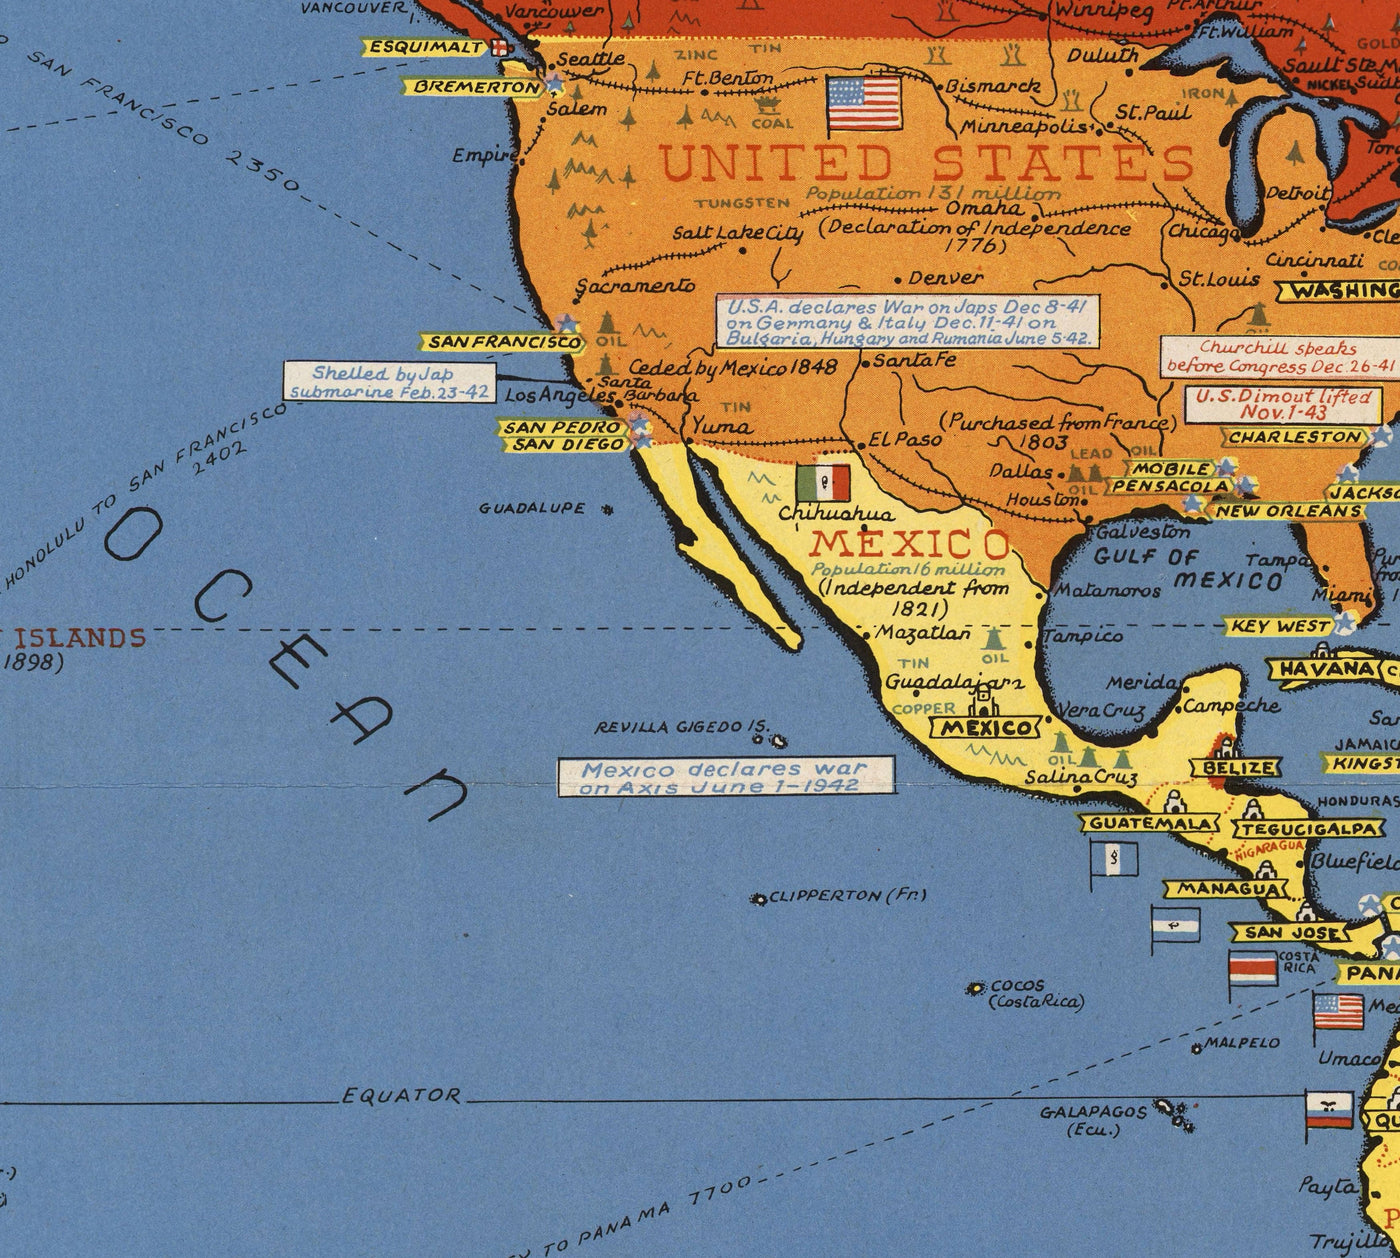 Old World War 2 Carte - "Événements datés" WW2 Tableau éducatif historique de Stanley Turner